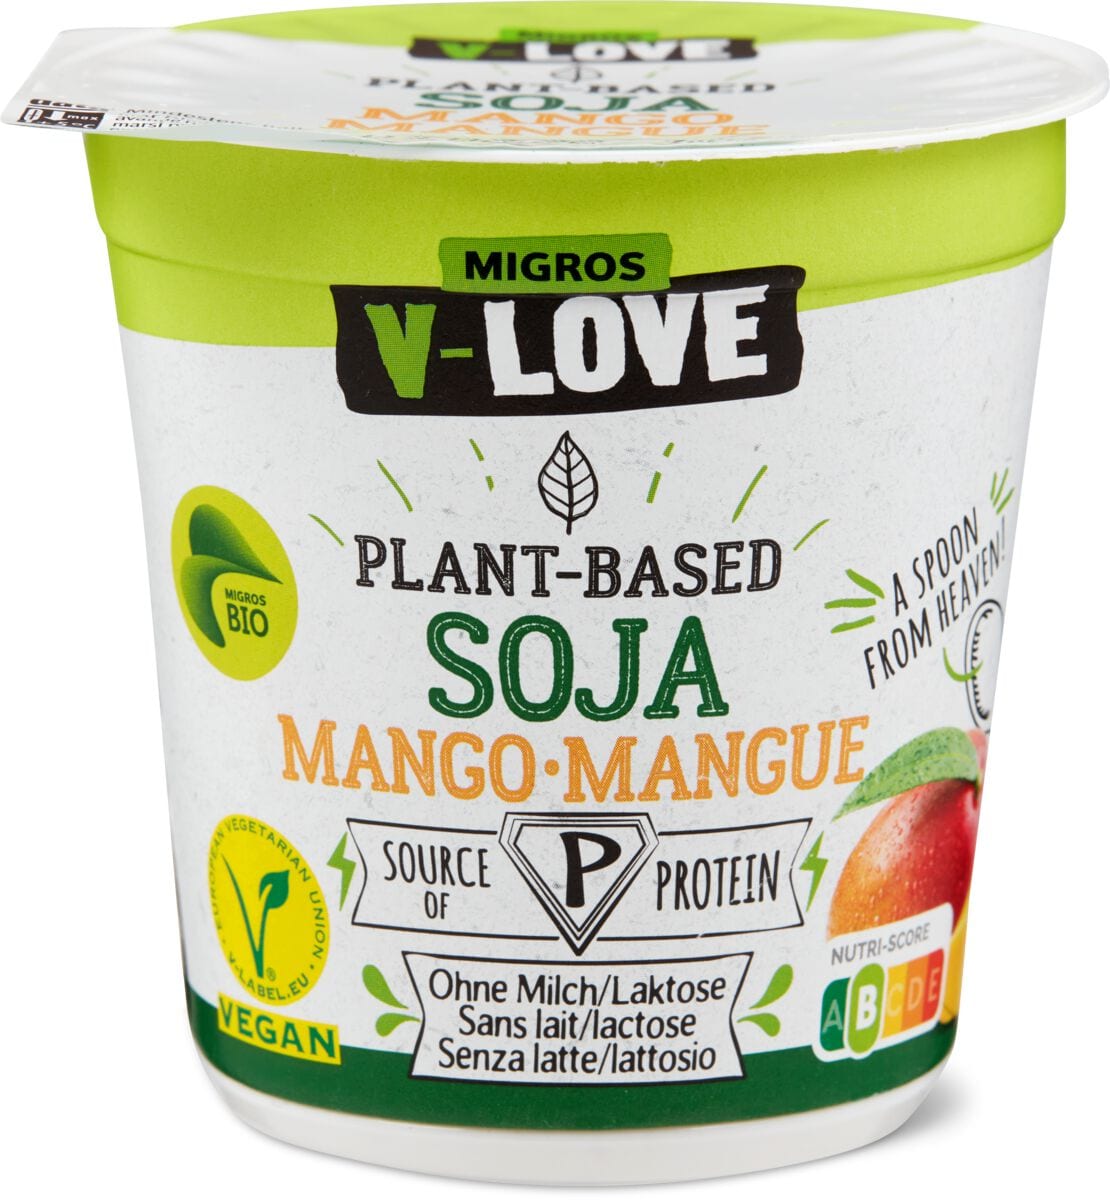 Bio V-Love Vegurt Soja Mango